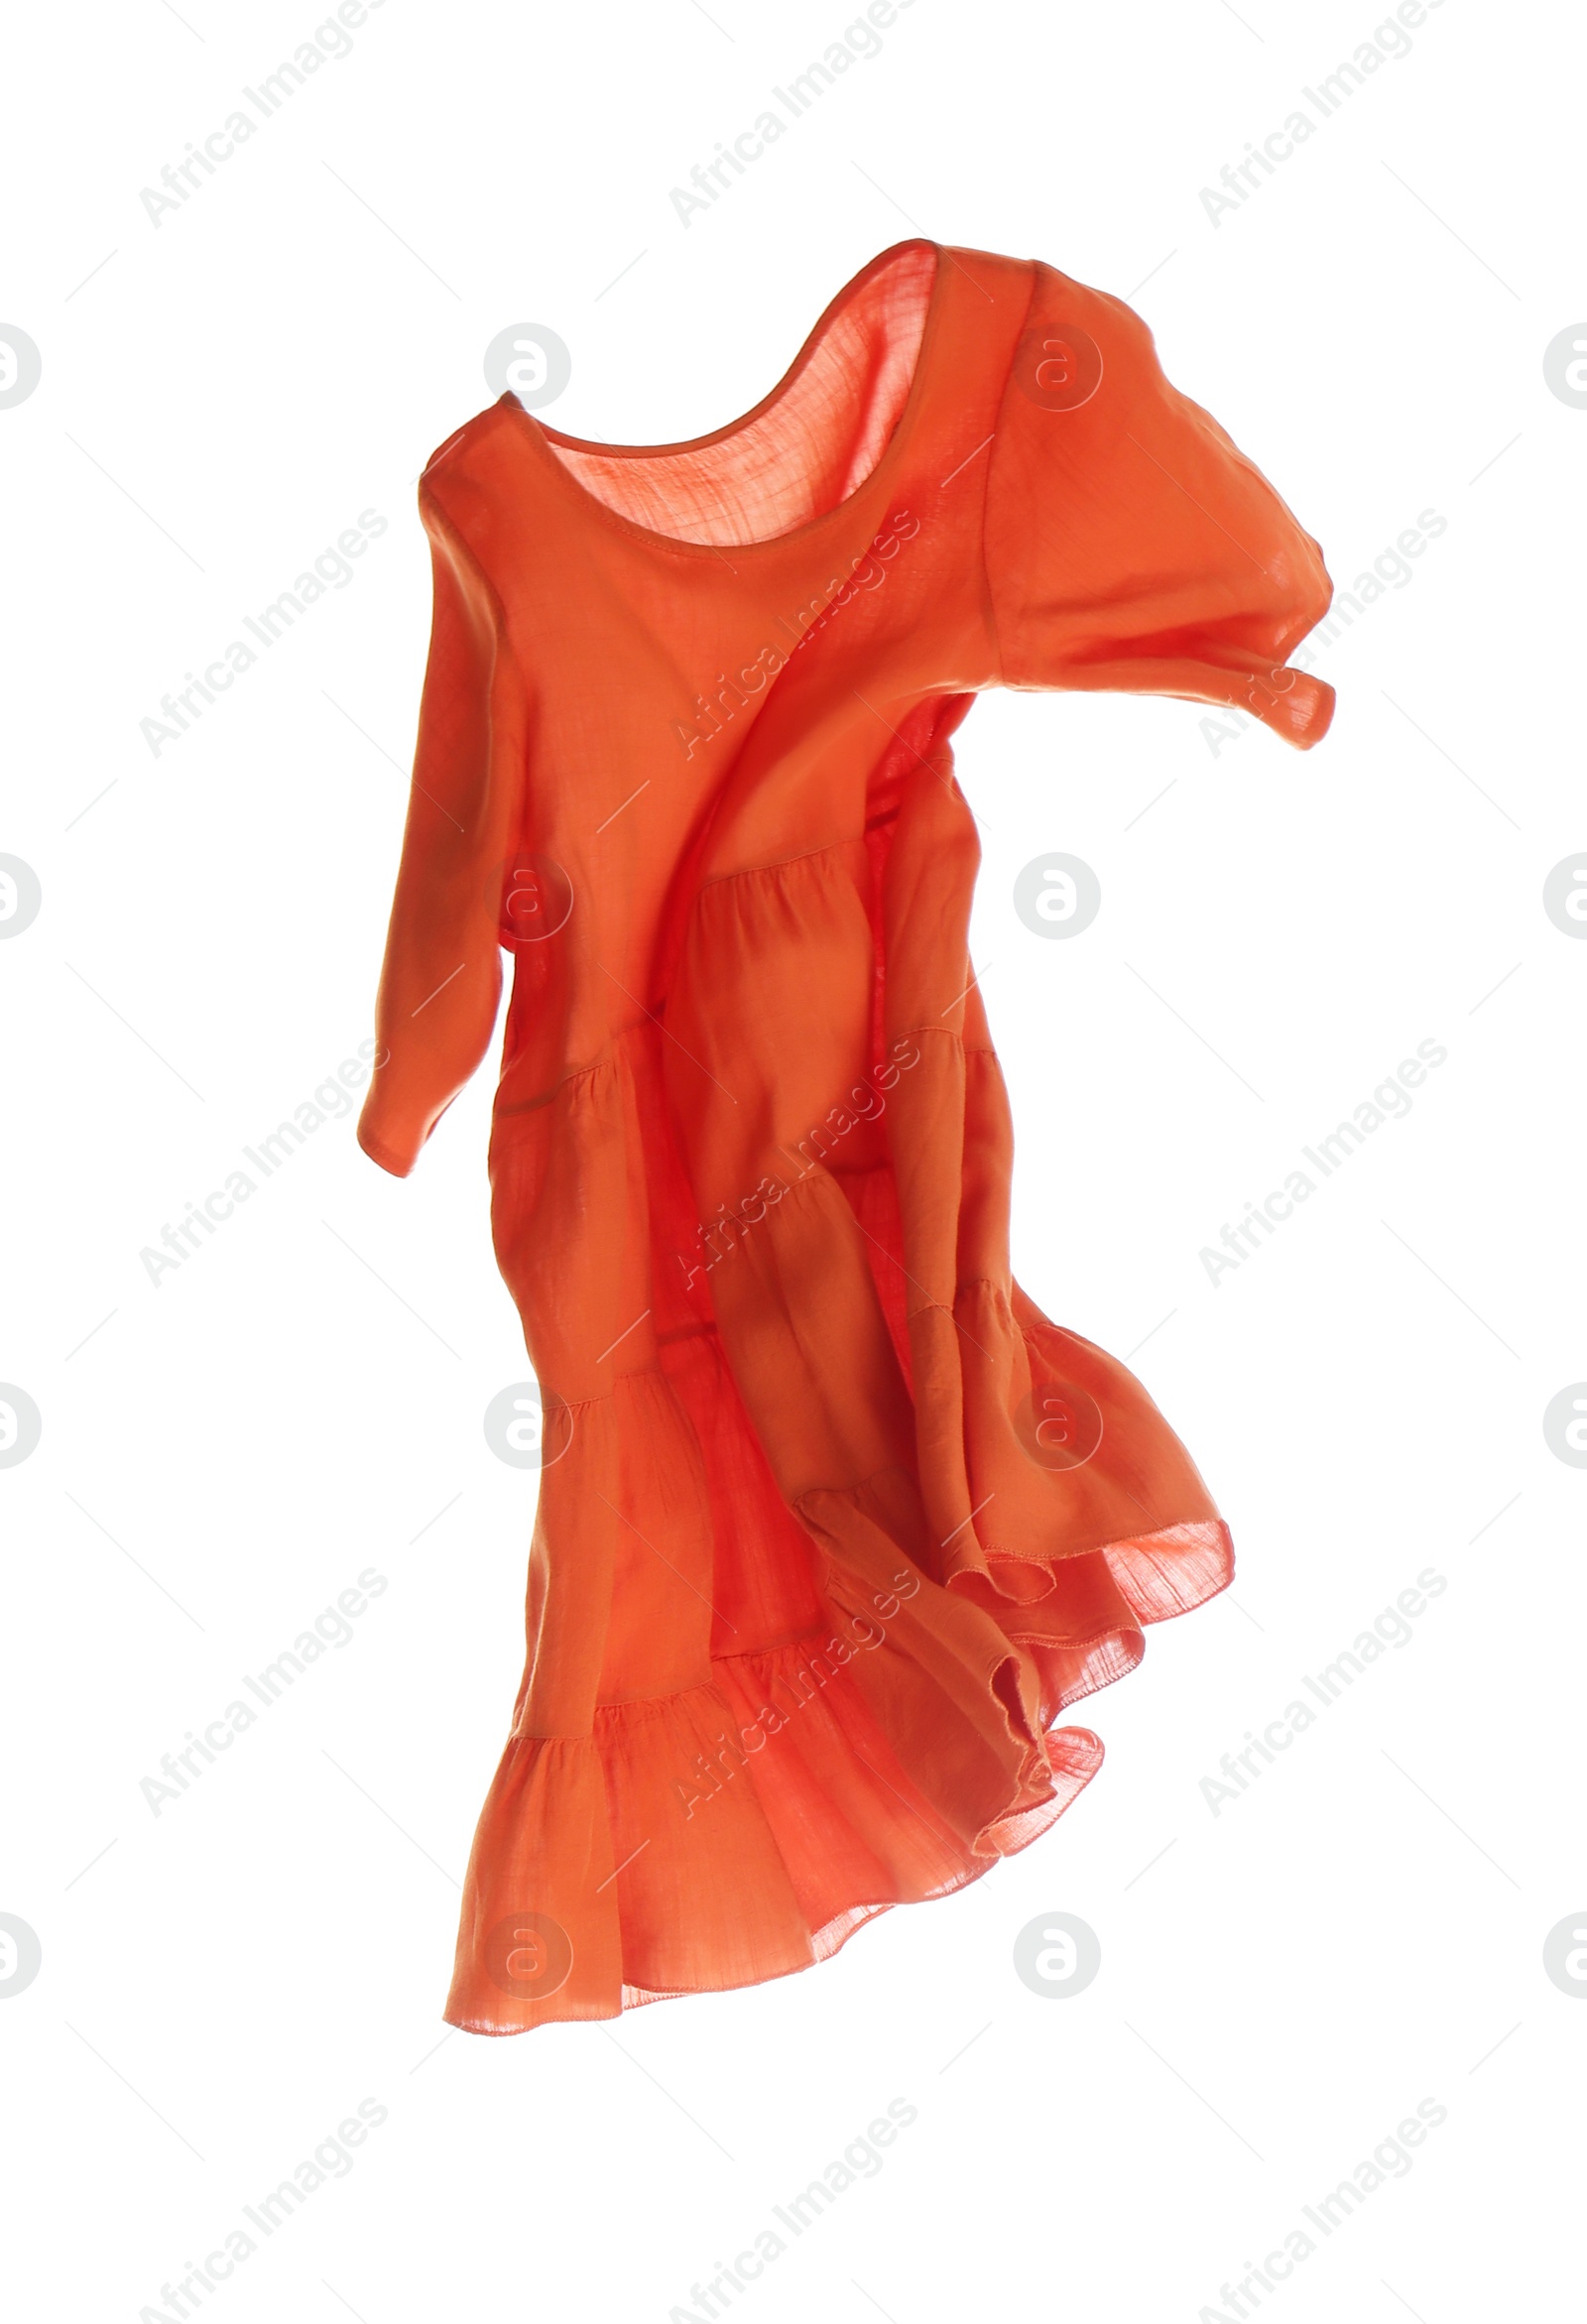 Photo of Orange dress isolated on white. Stylish clothes